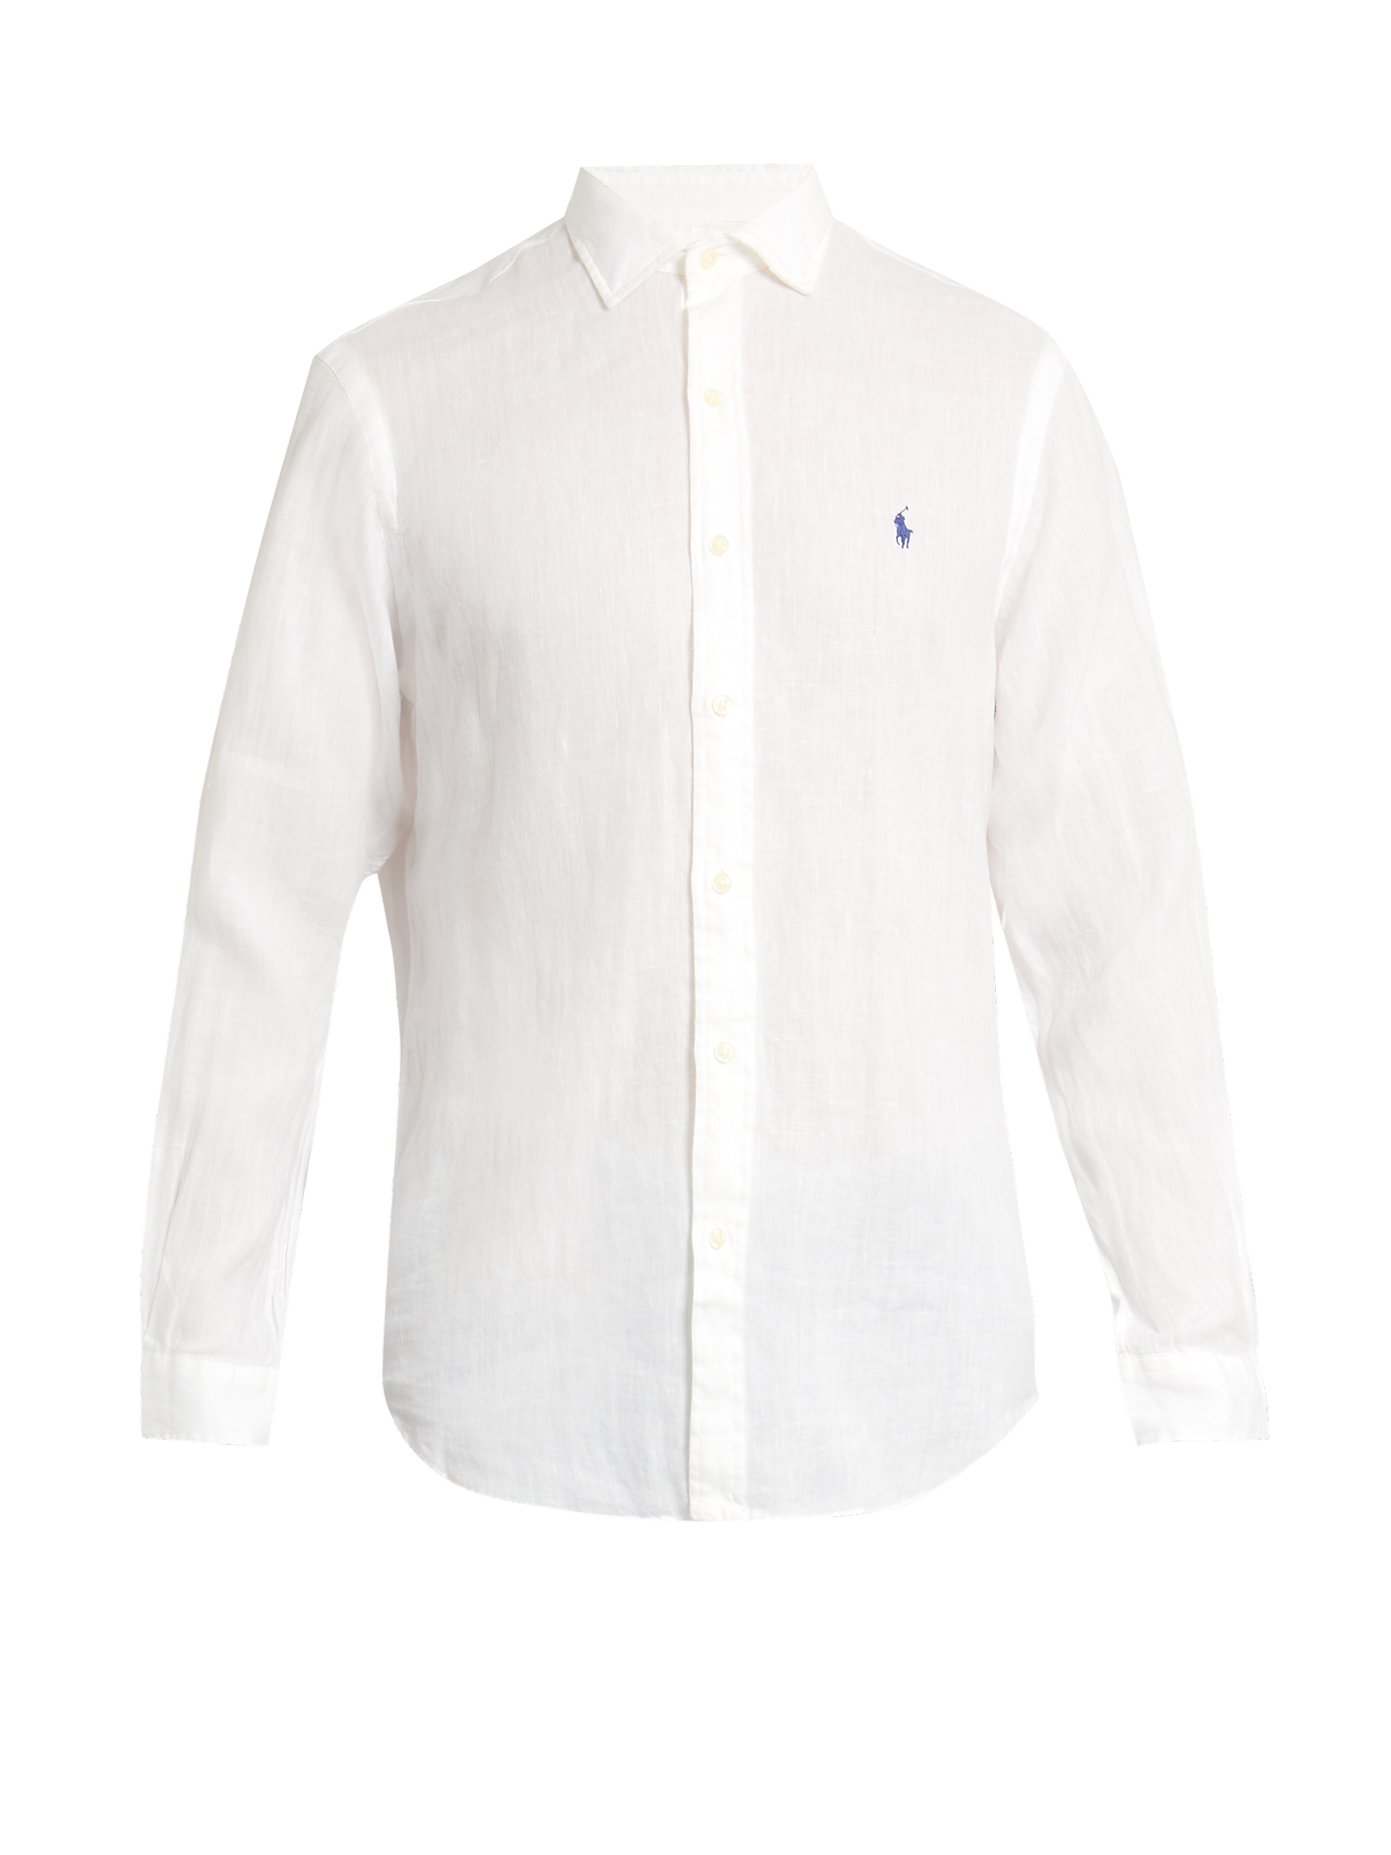 polo white linen shirt